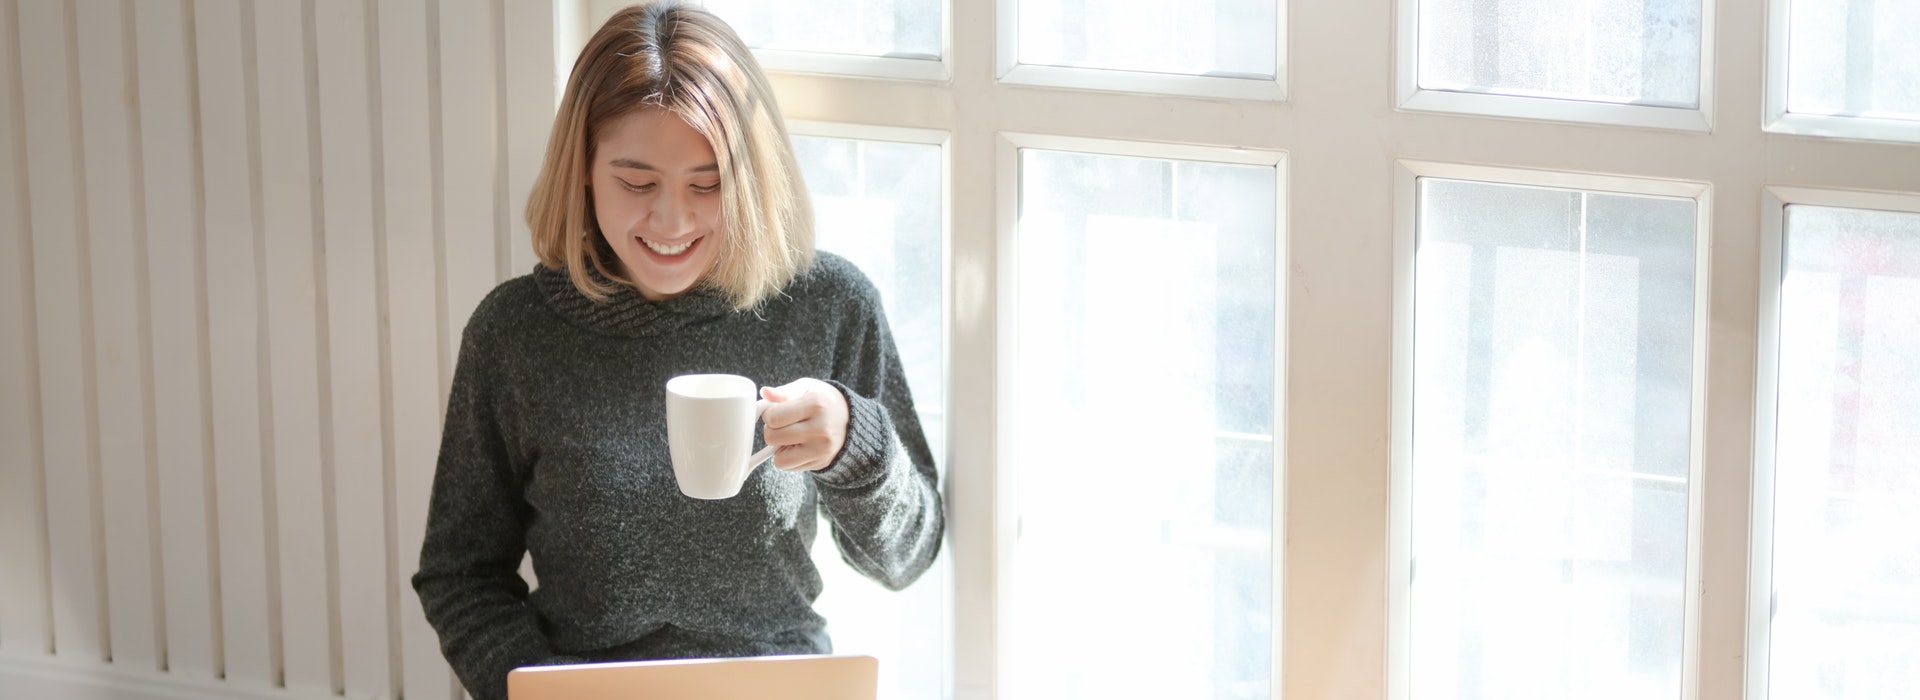 Une femme assise à une fenêtre boit du café et tape sur un ordinateur portable